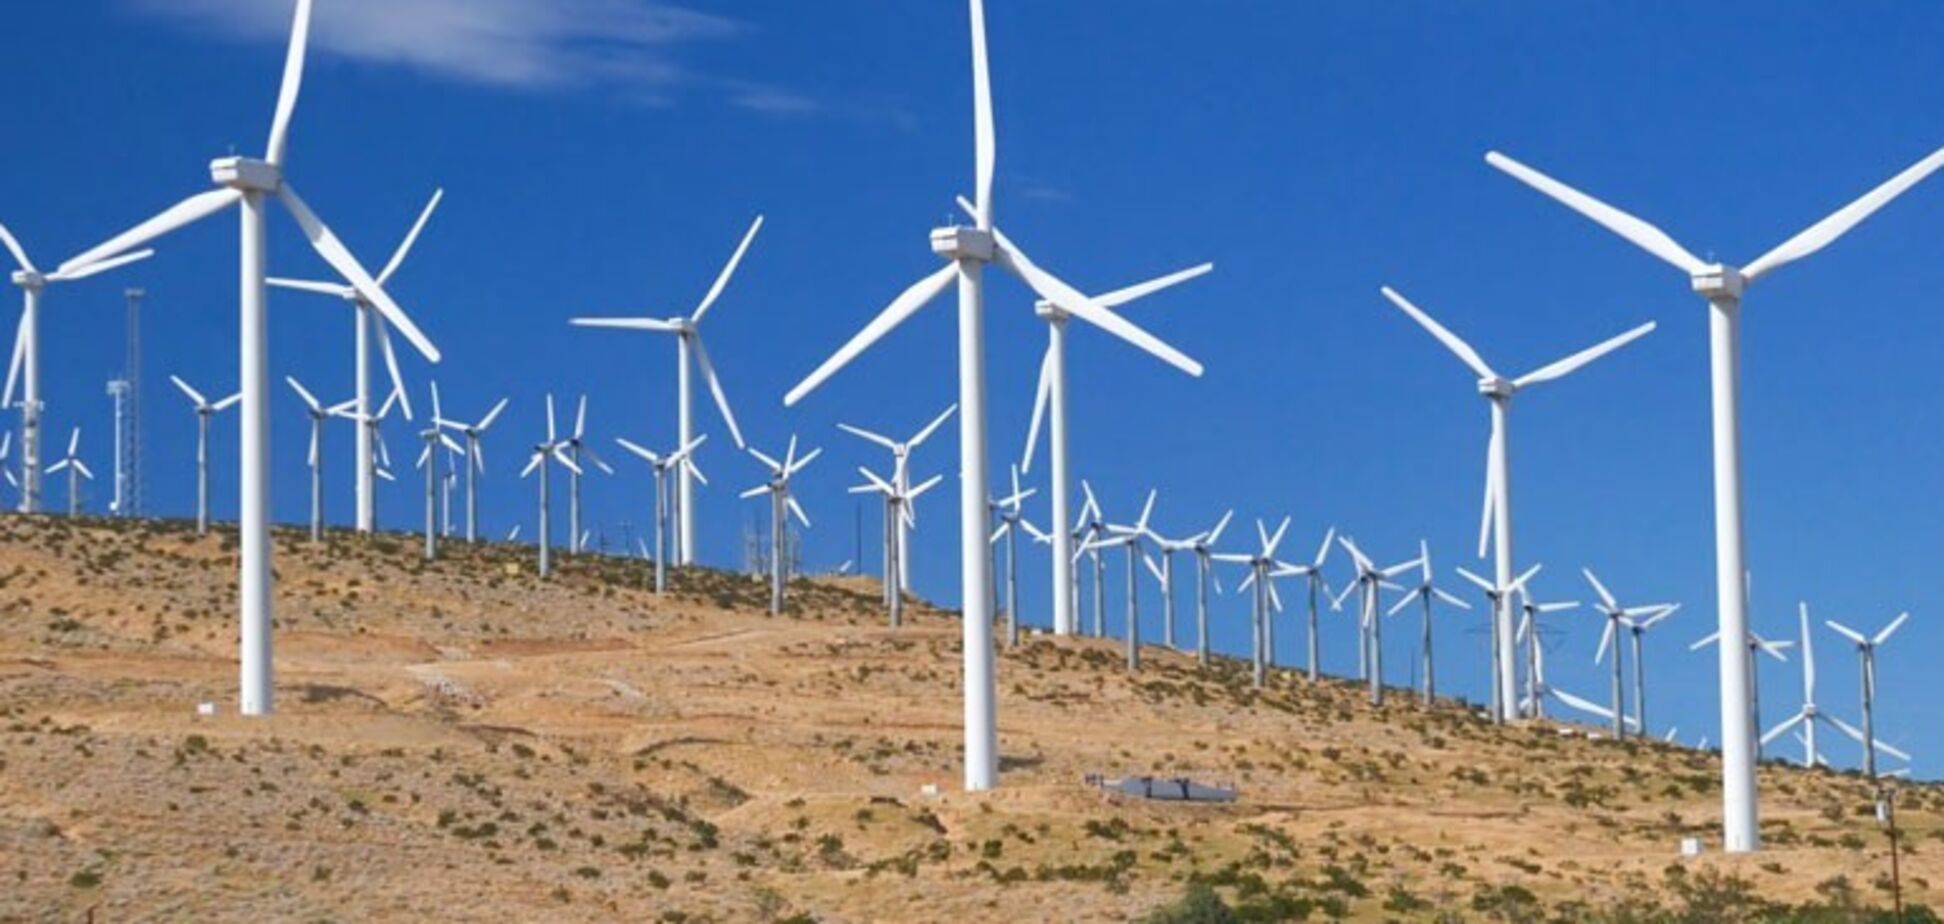  На Херсонщине построят ветровые электростанции: Украина заключила крупную сделку с Норвегией